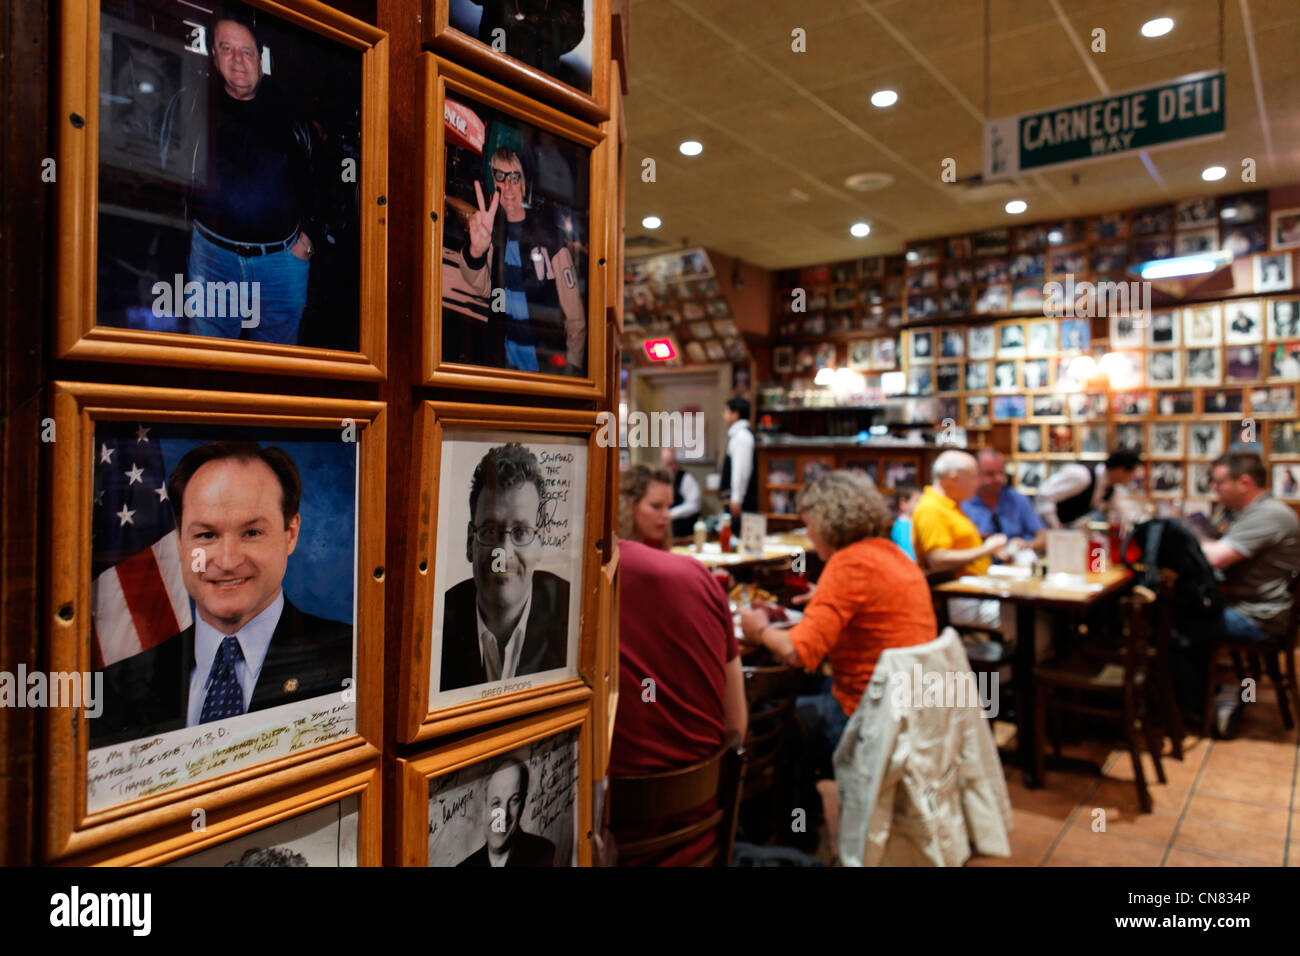 Vereinigte Staaten, New York City, Manhattan, Midtown, Fotos von Persönlichkeiten in einem Raum der Restaurant Carnegie Deli gewidmet Stockfoto